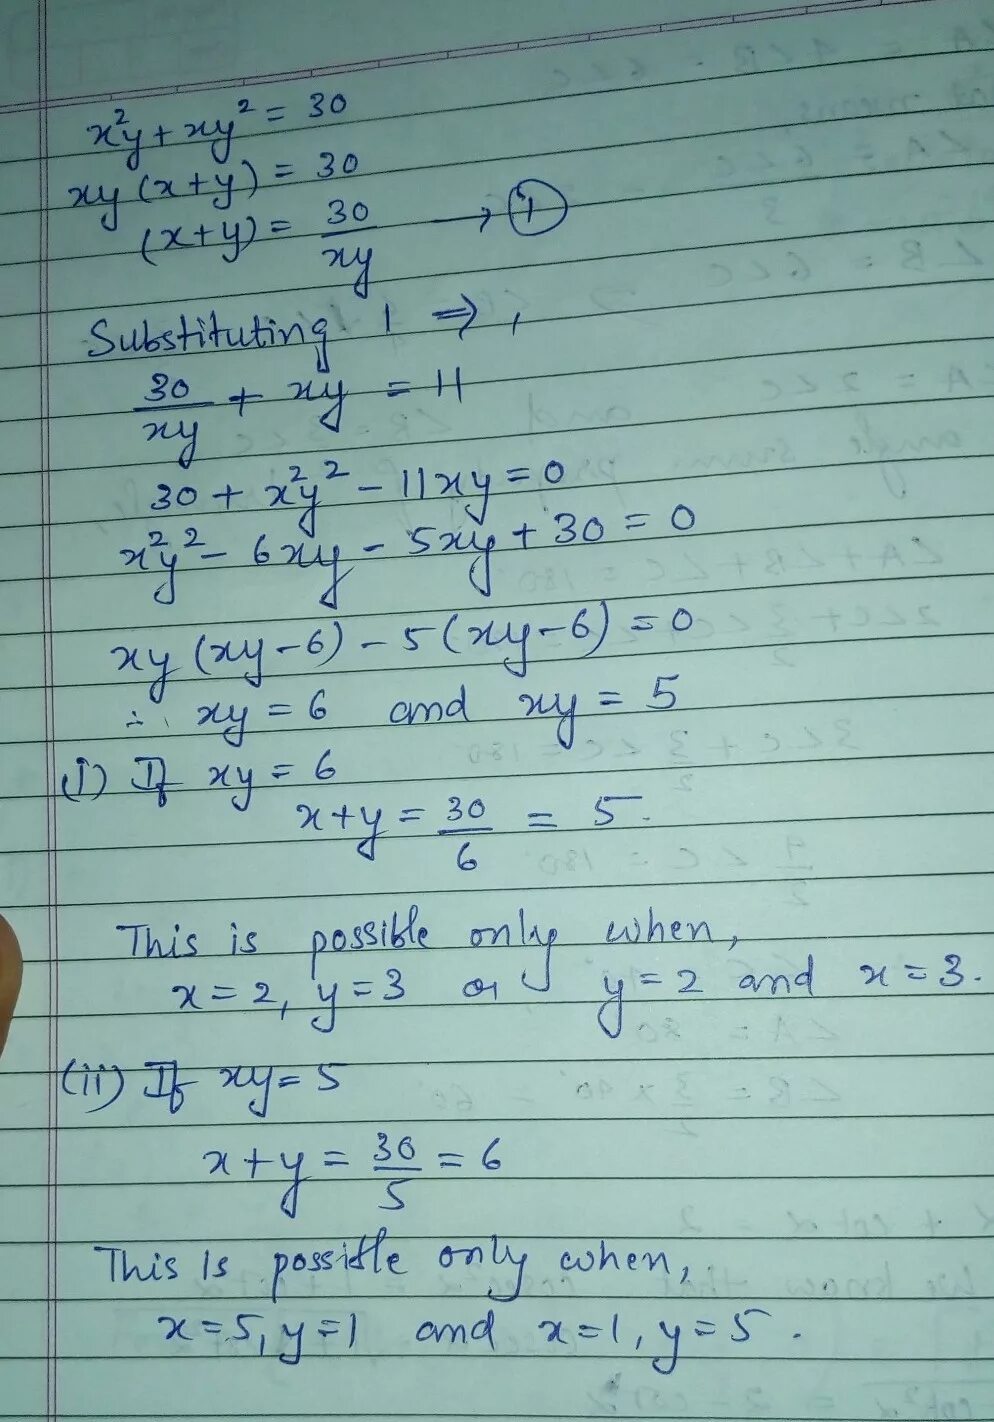 XY X Y 11 x2y xy2 30. XY(X-Y)=2. Y-XY'=2(1+X^2y'). Y 11tgx-11x+16. 2x 3y 11 x y 3